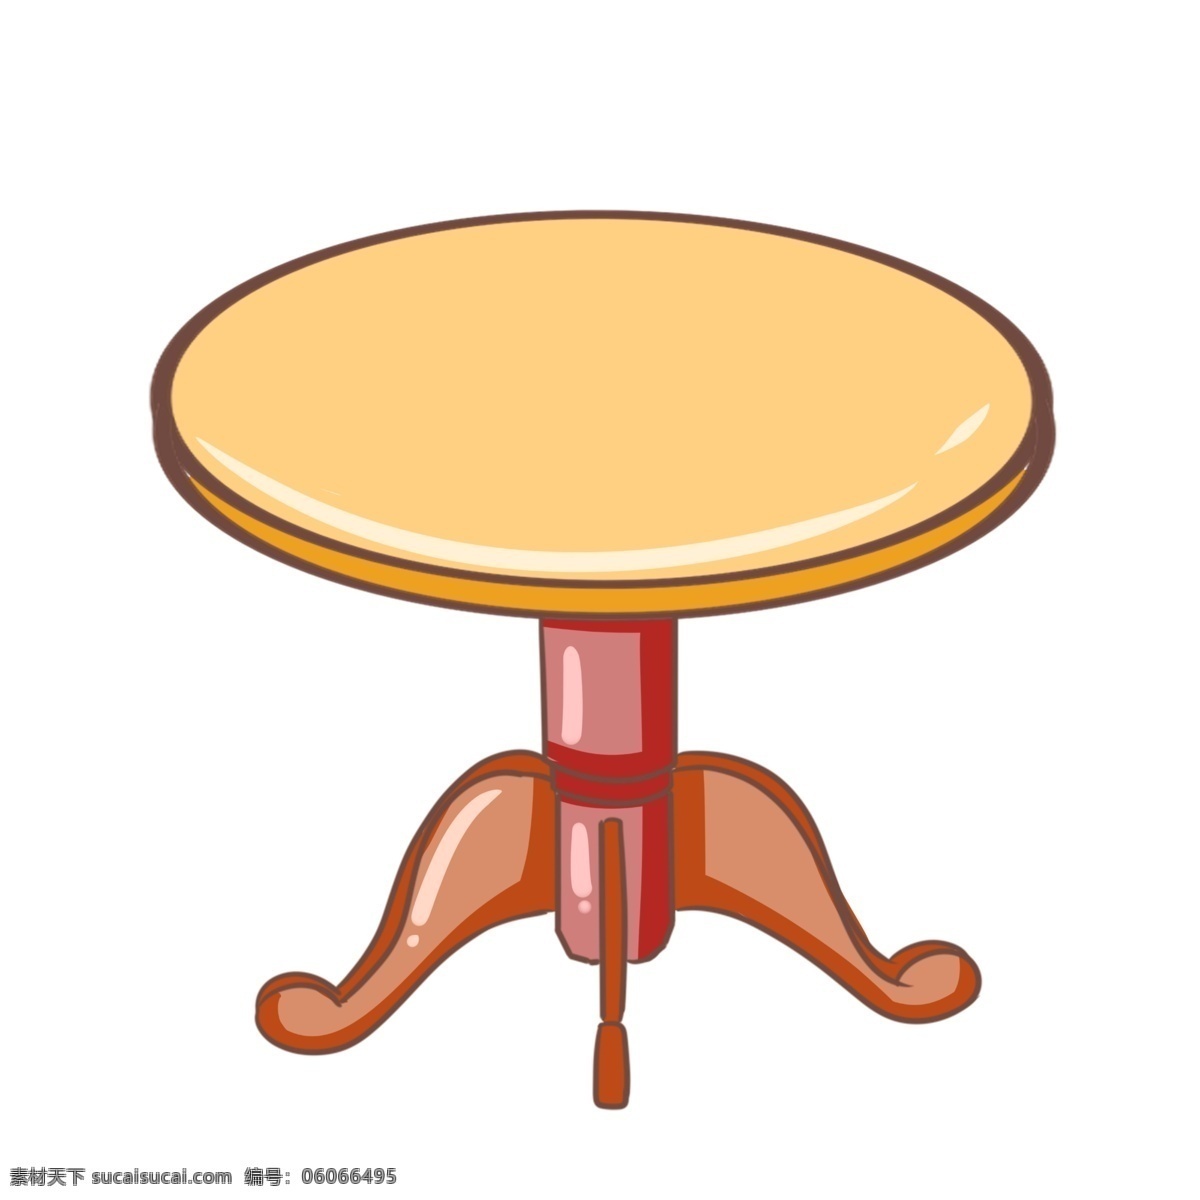 手绘 转动 桌子 插画 黄色的桌面 卡通插画 手绘桌子插画 创意家具插画 红色的桌腿 转动的桌子